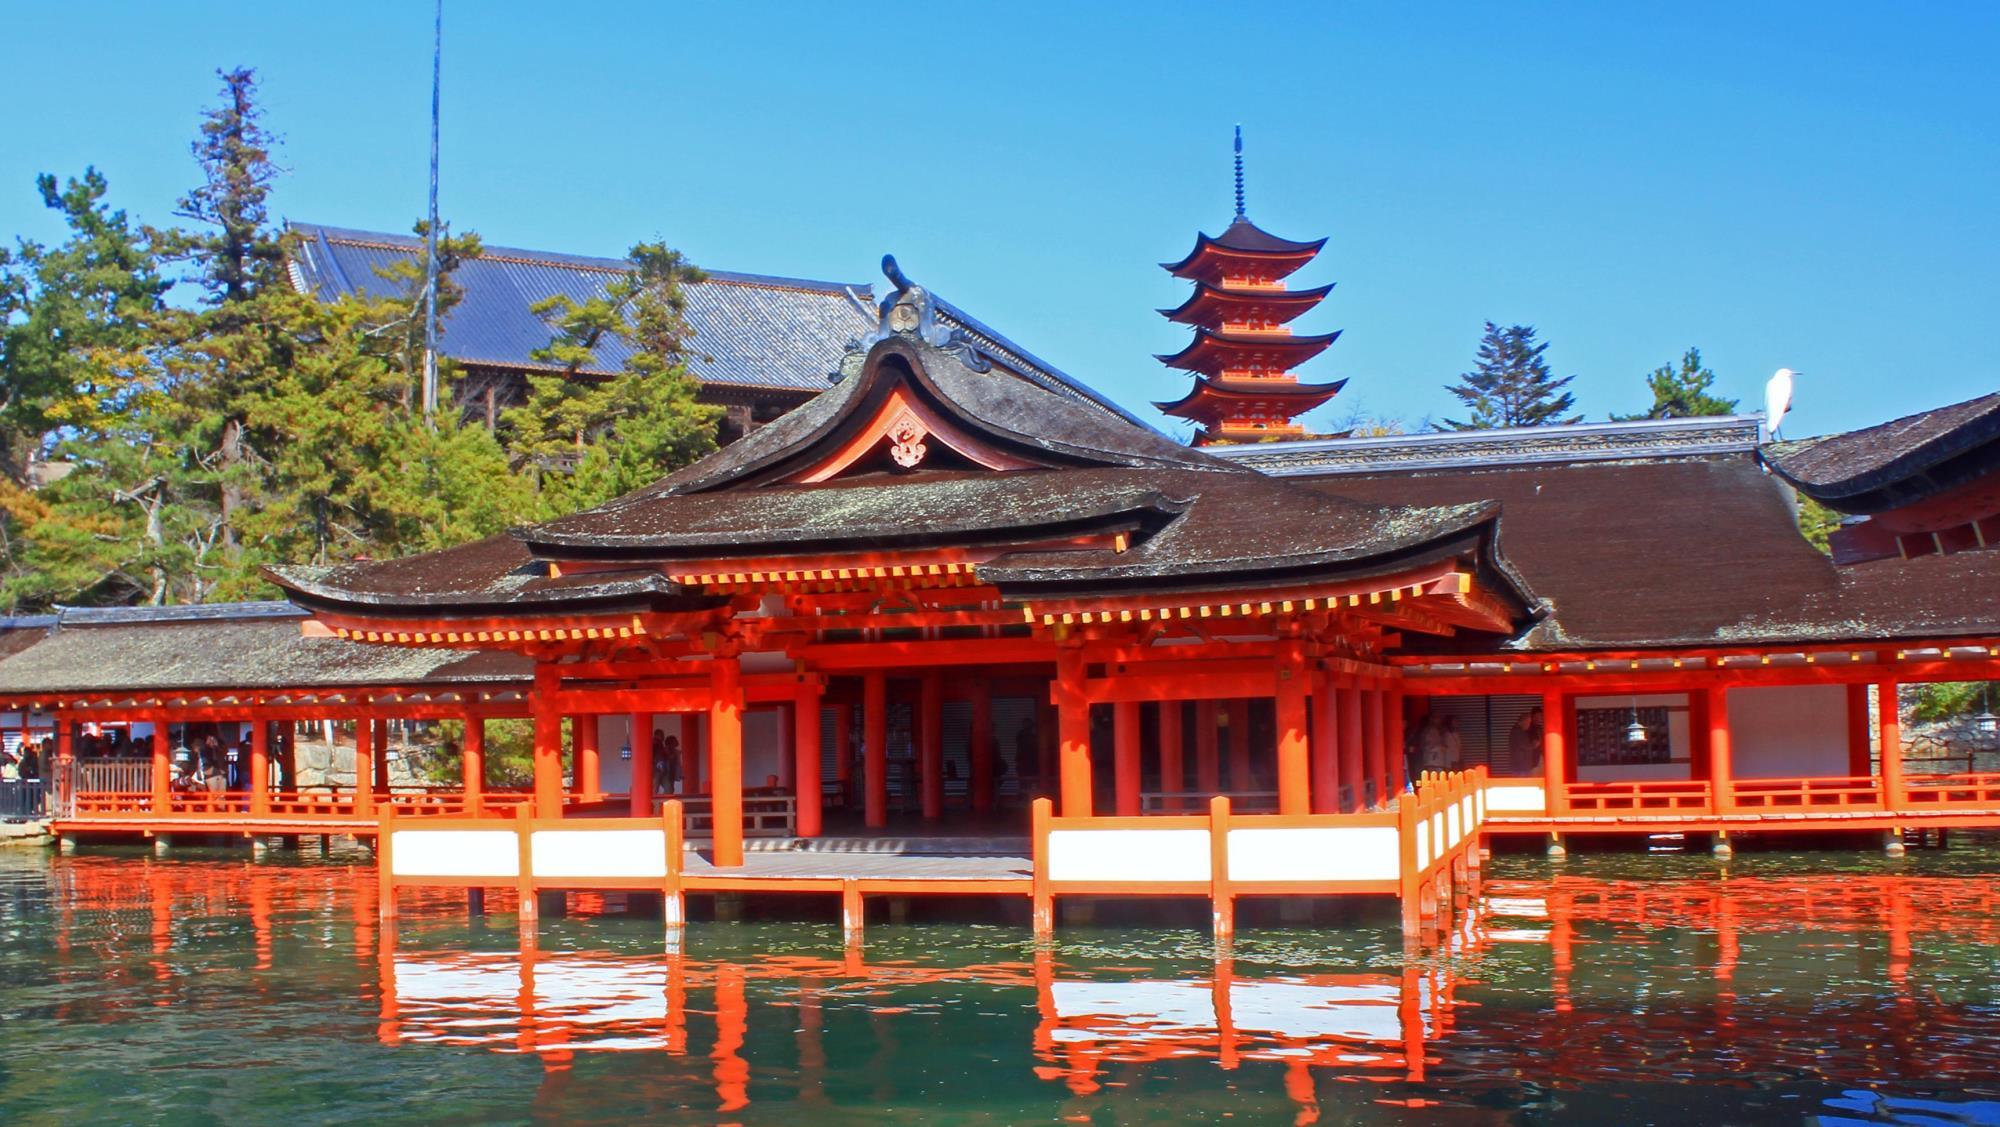 海の青に映える朱塗りの社殿は、潮が満ちるとまるで海に浮かんでいるよう。 世界文化遺産でもある厳島神社でまずは参拝を。